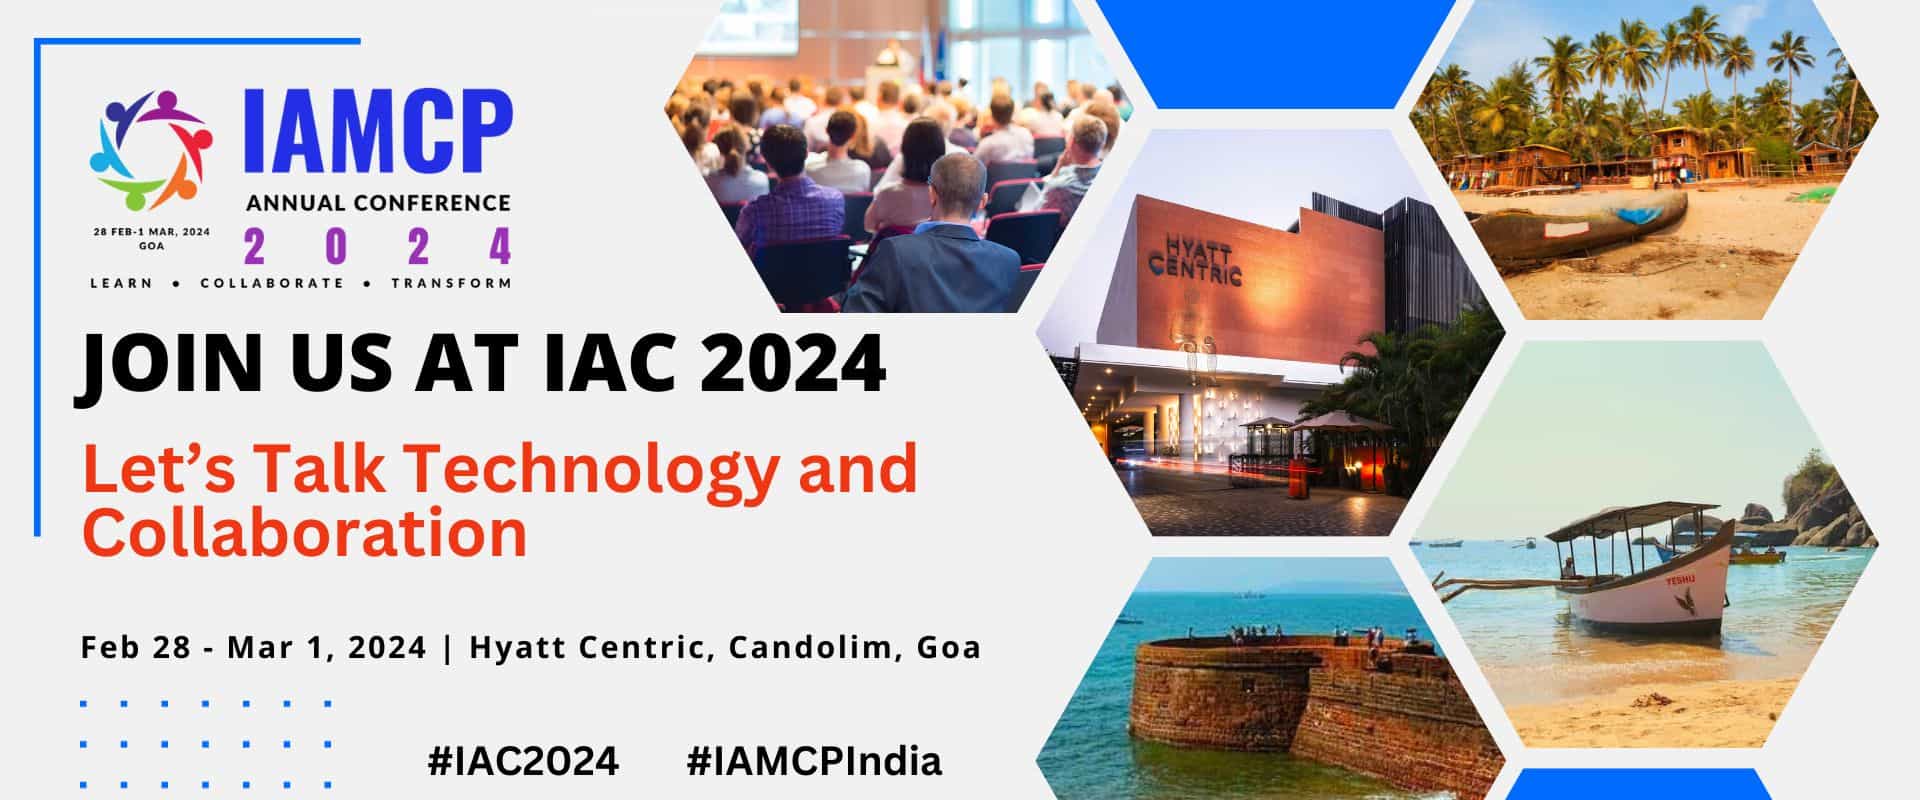 IAMCP Annual Conference 2024 IAMCP India